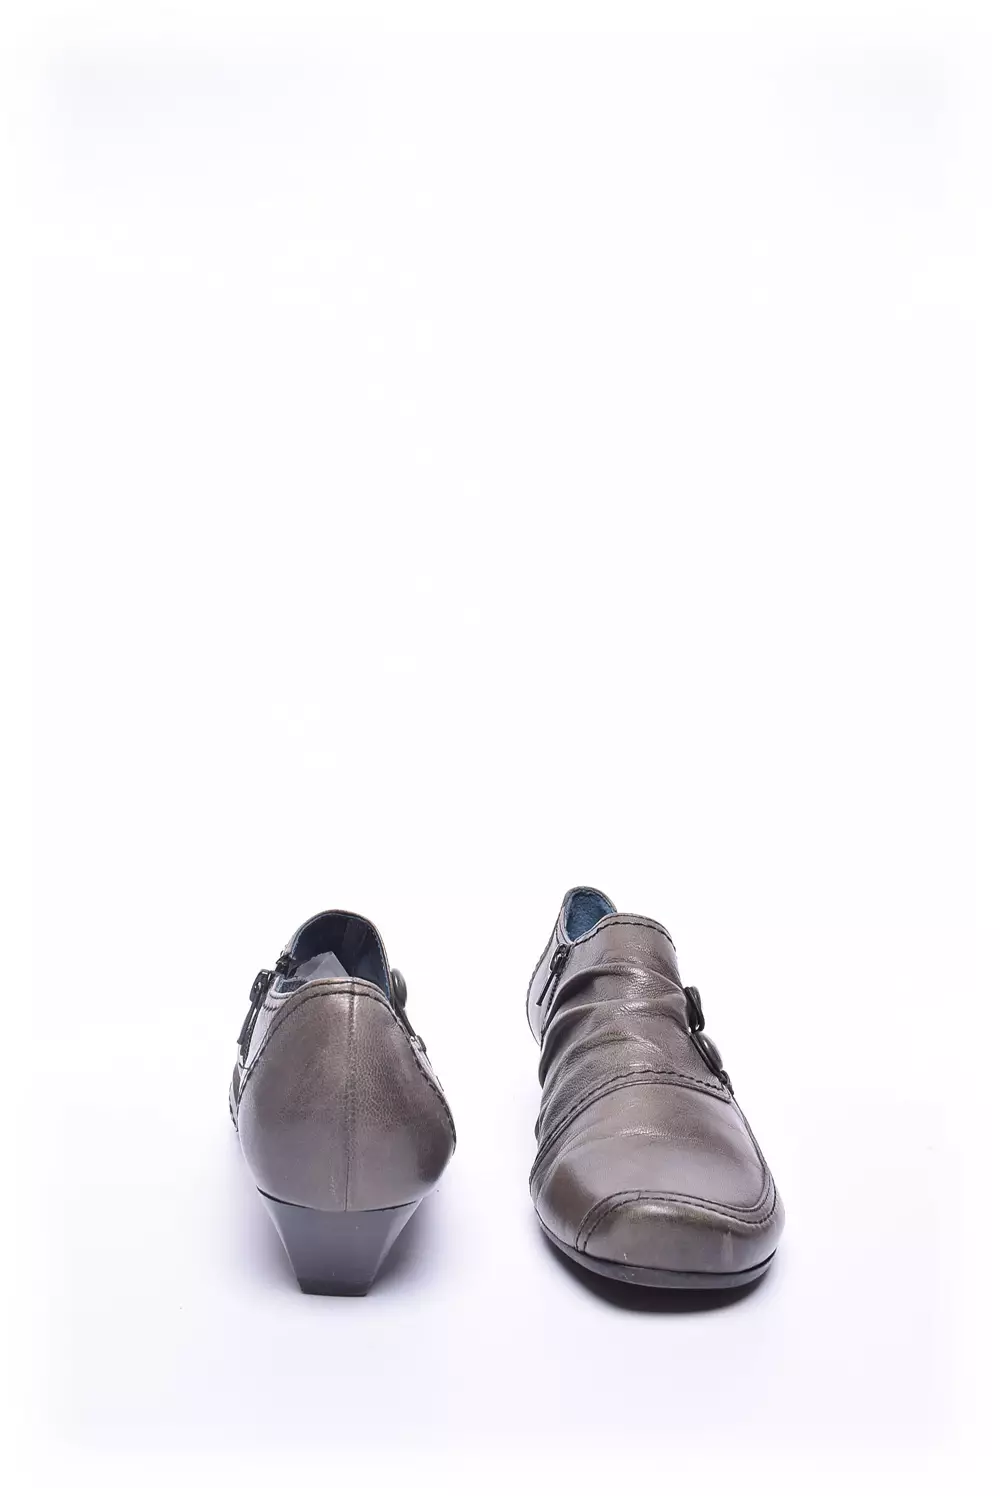 Pantofi dama  [4]